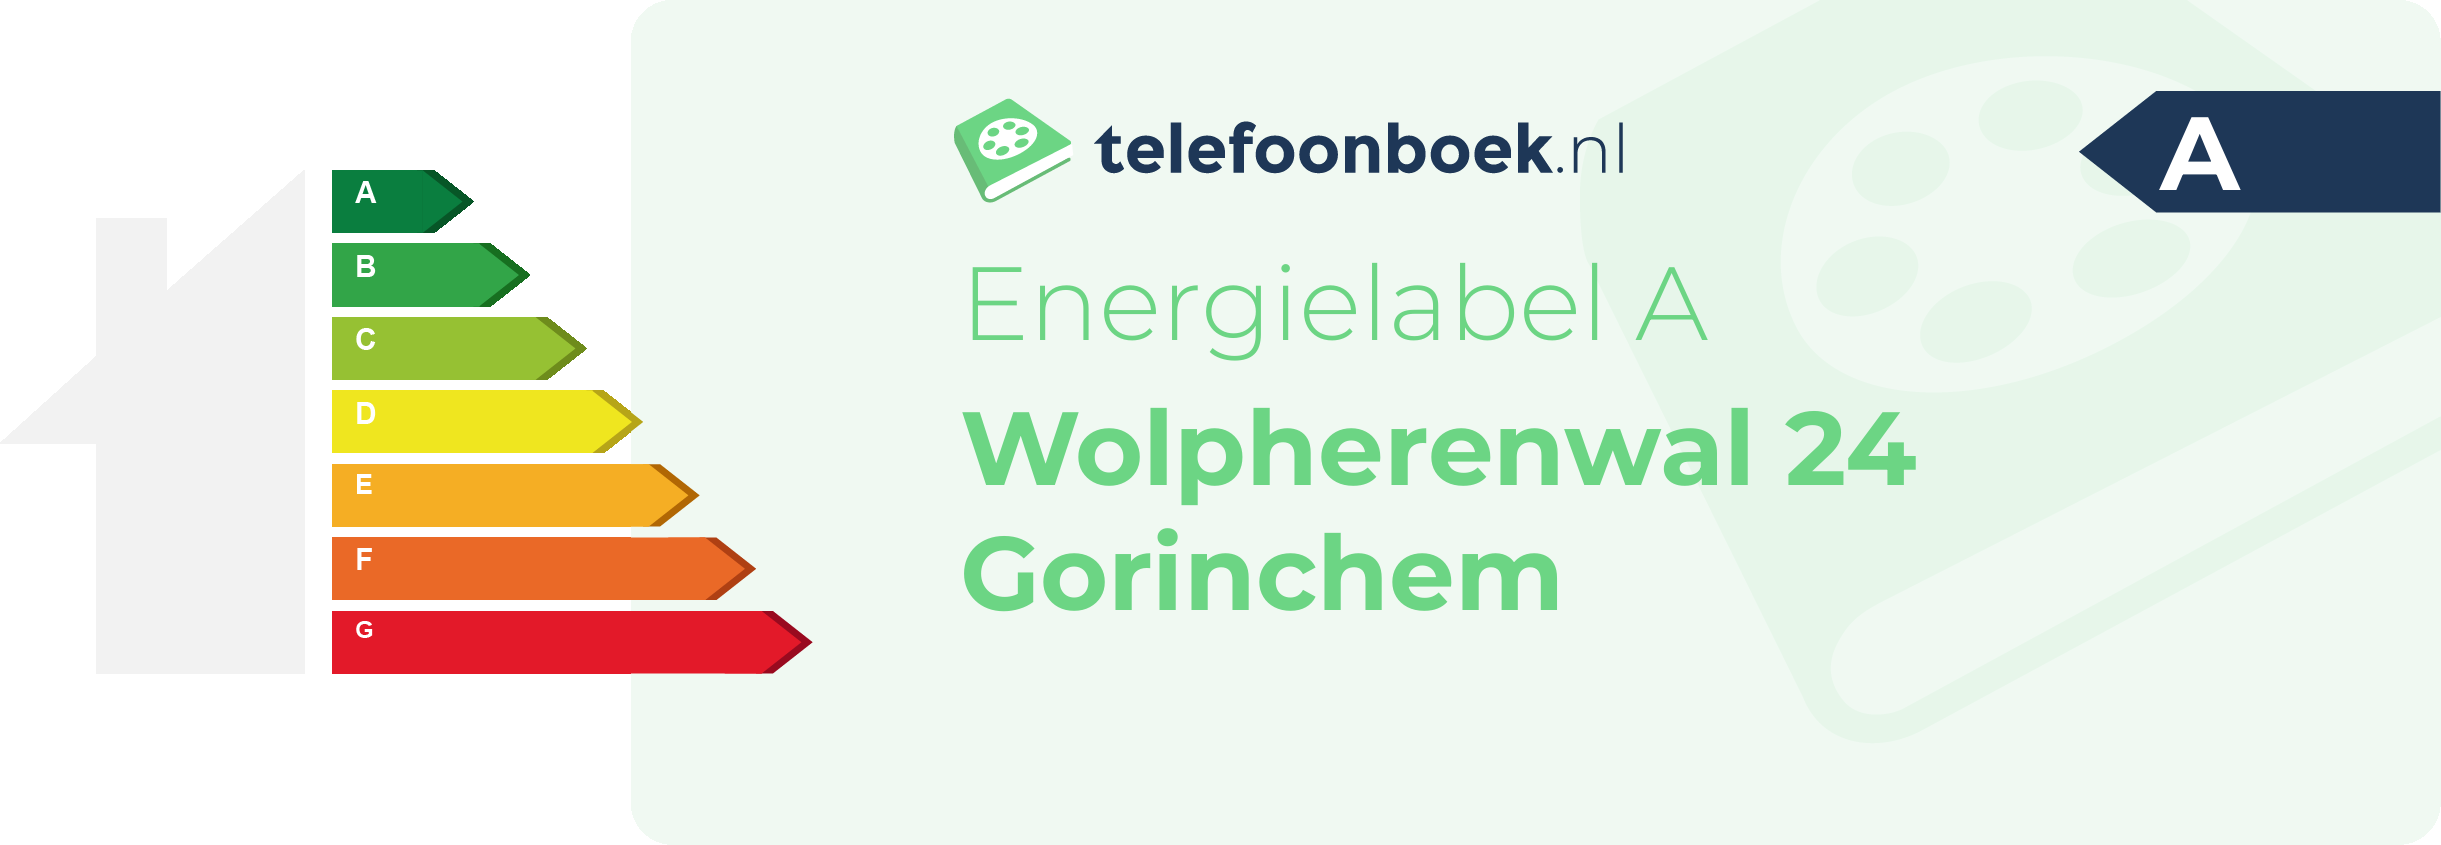 Energielabel Wolpherenwal 24 Gorinchem